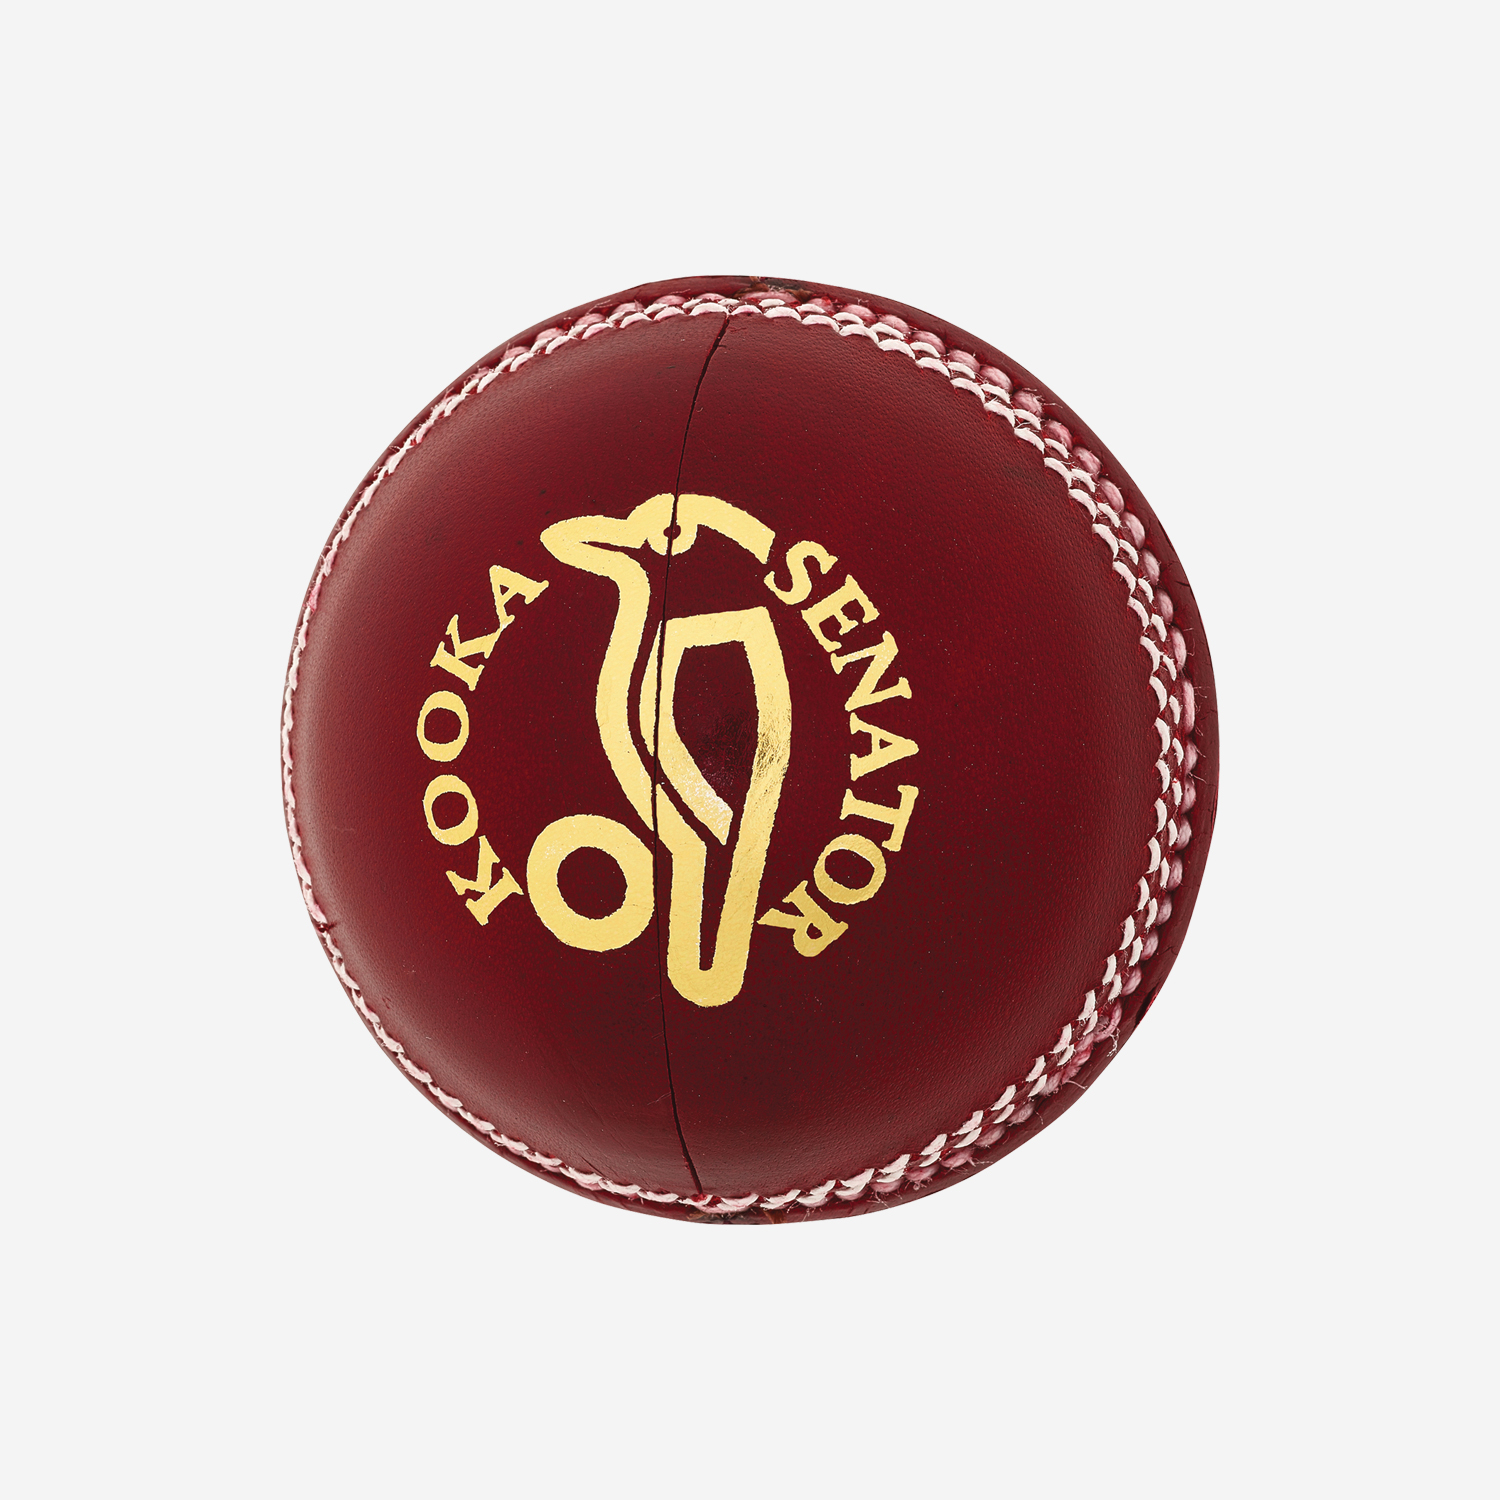 Kooka Senator Cricket Ball